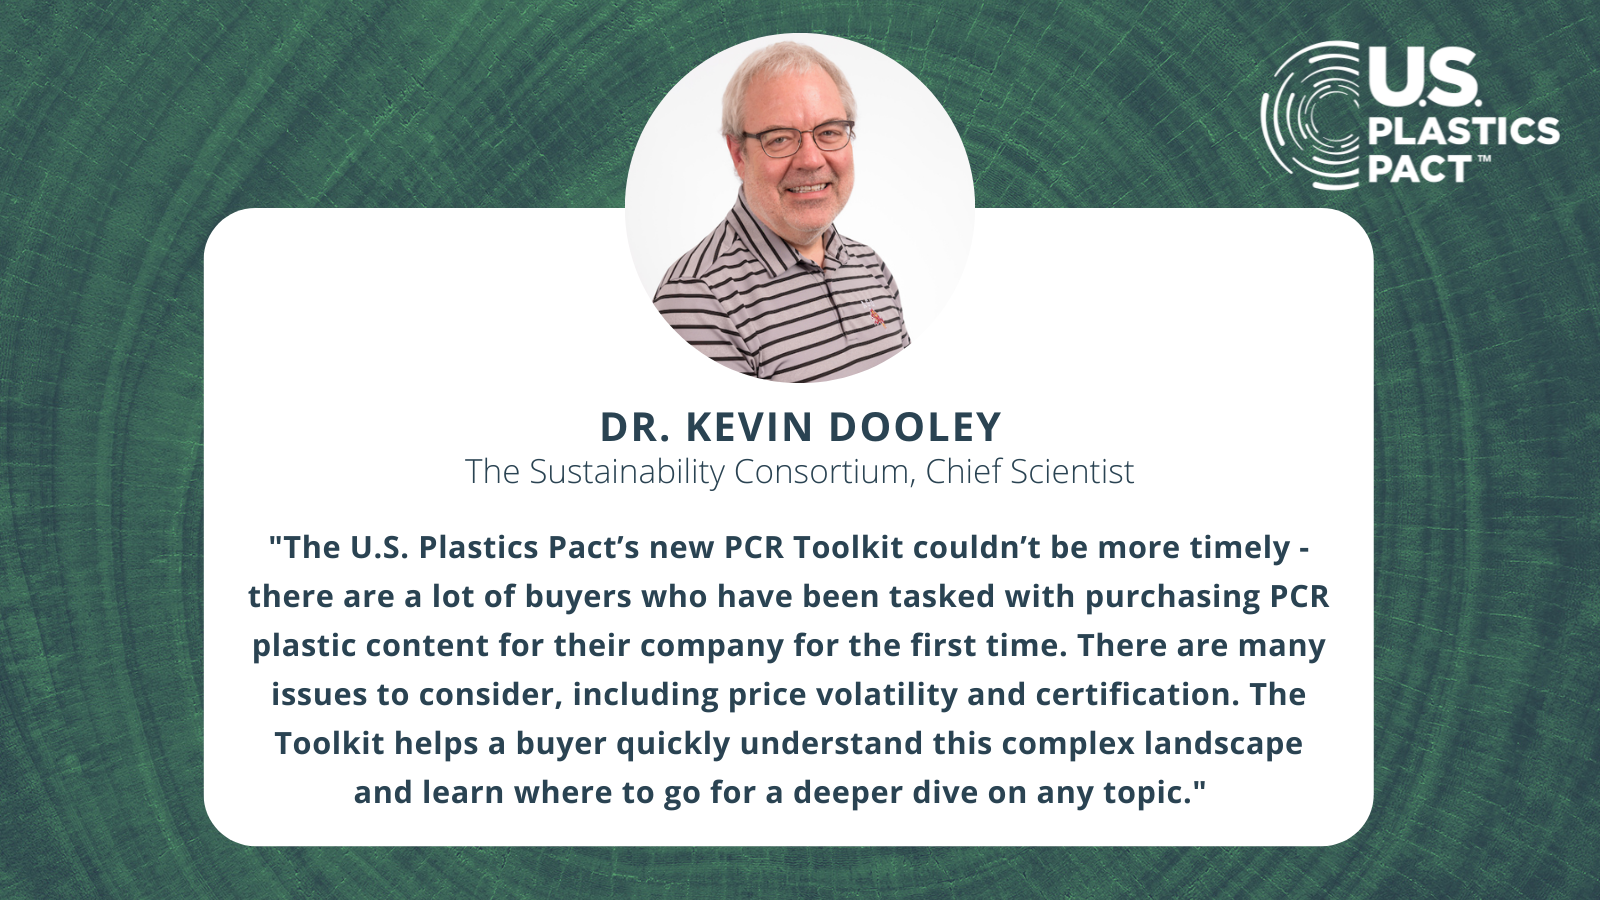 Dr. Kevin Dooley